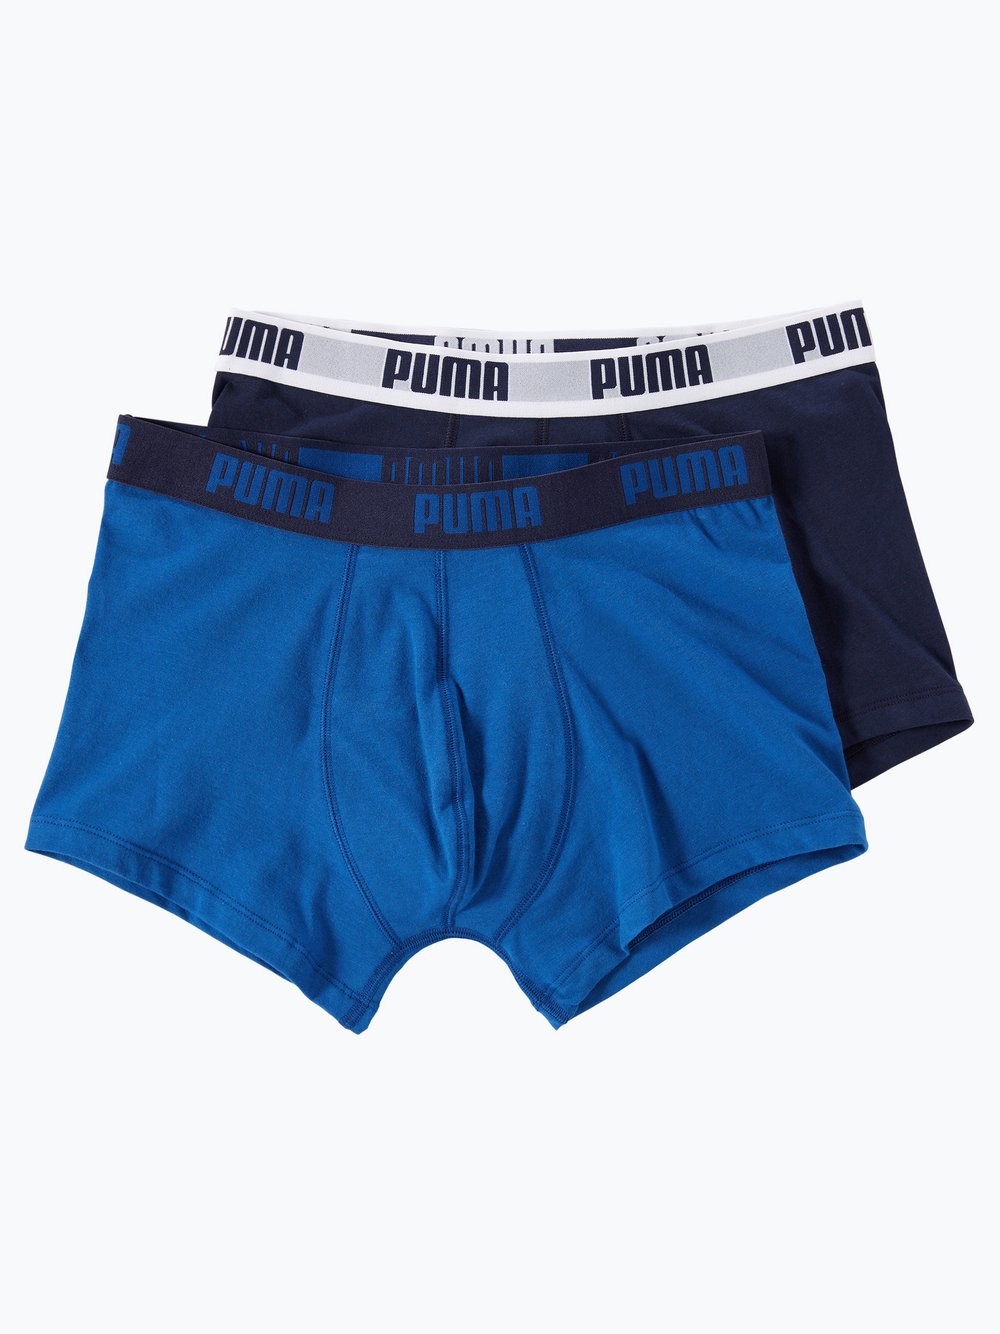 Puma - Obcisłe bokserki męskie pakowane po 2 szt., niebieski